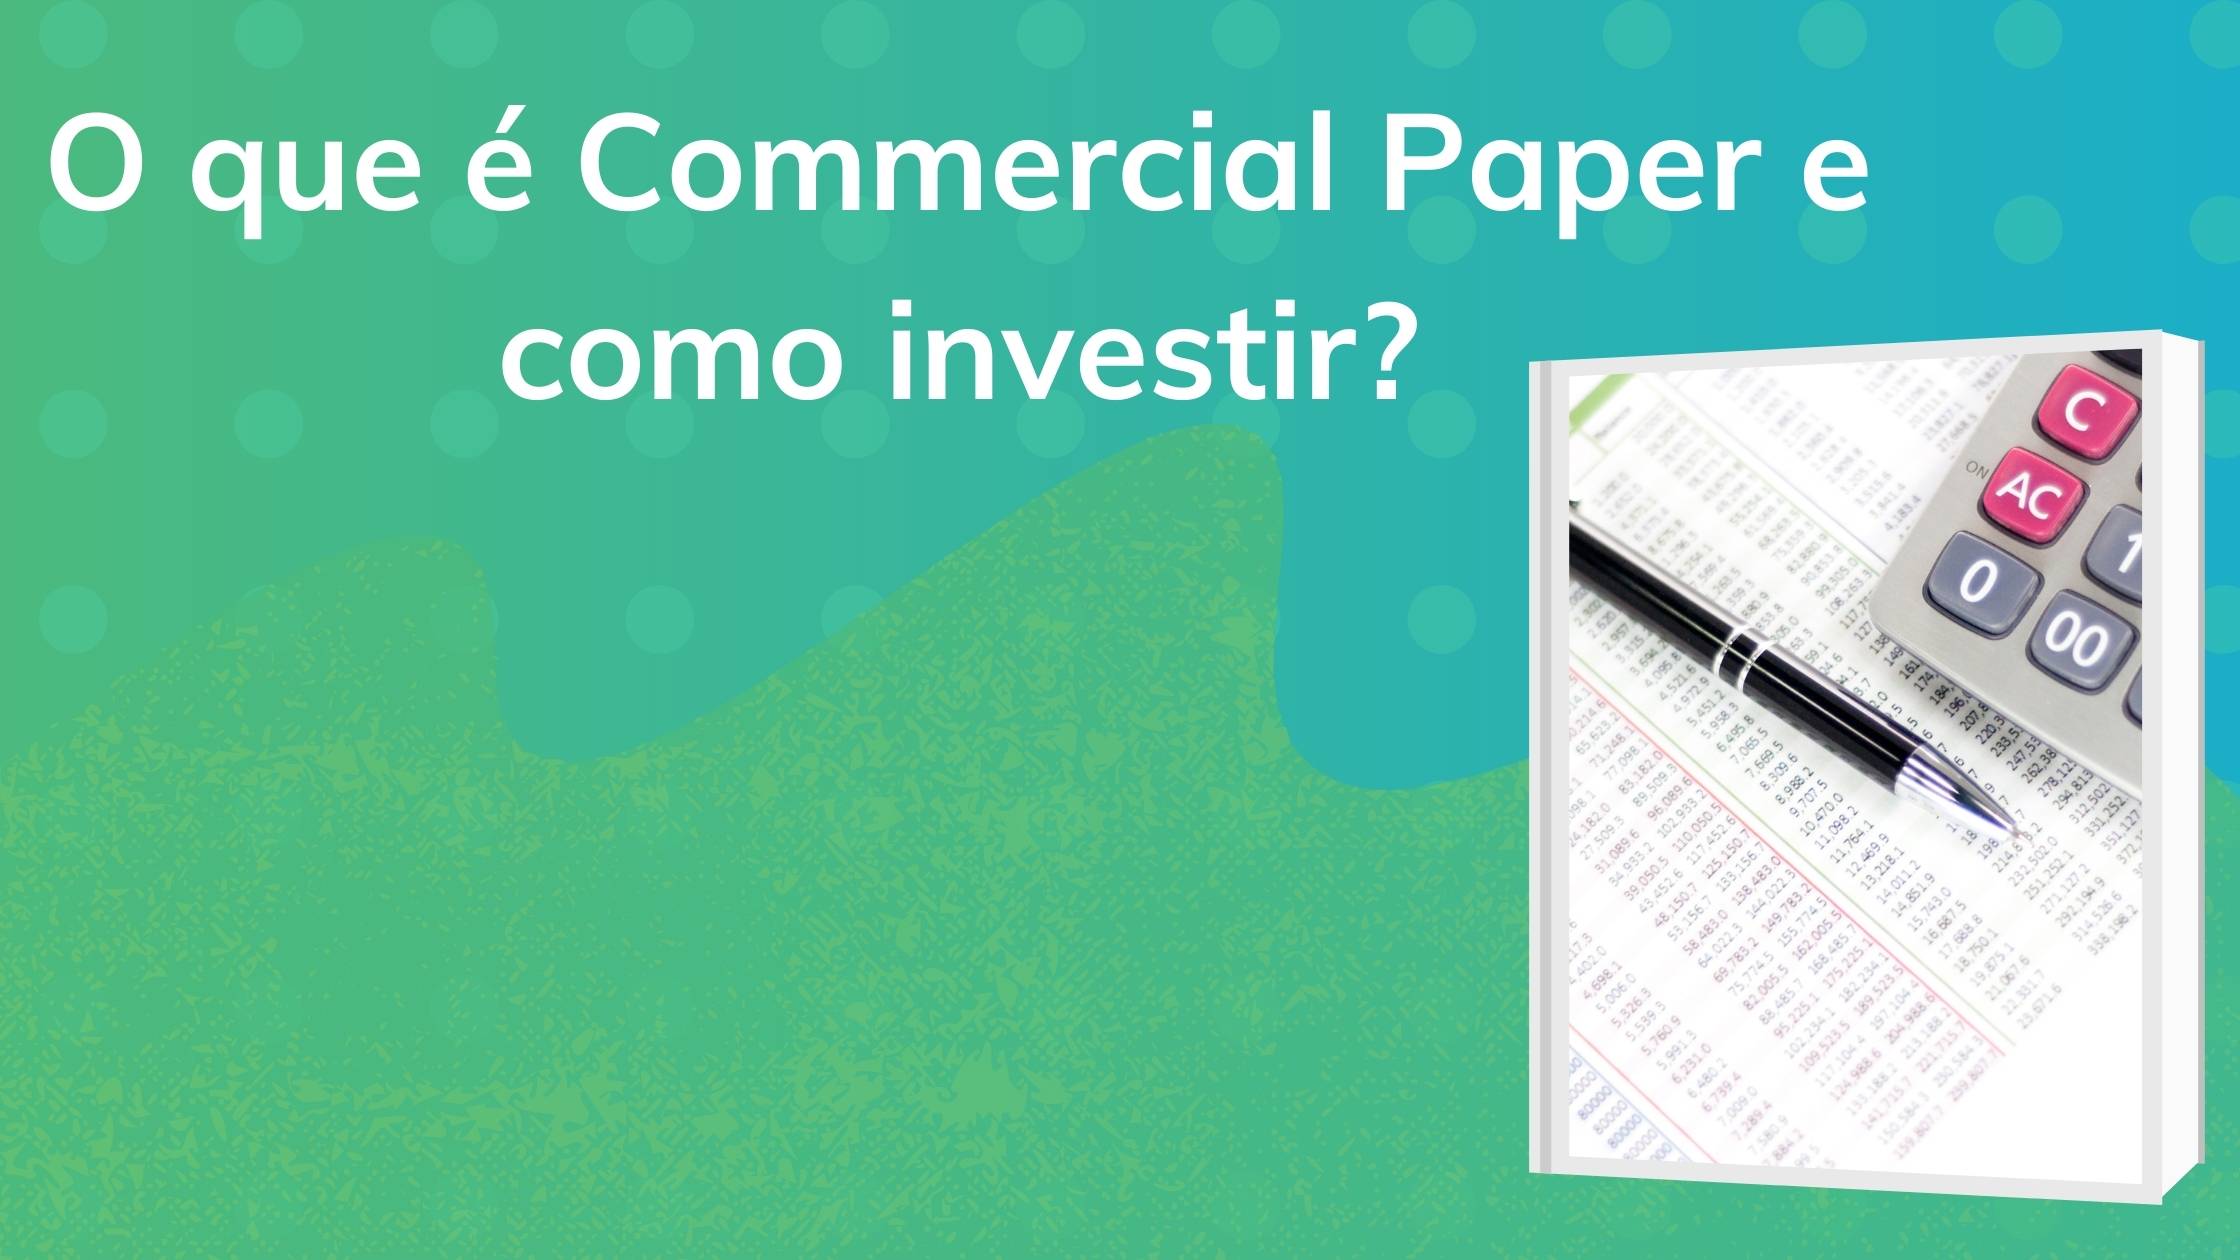 o que é commercial paper e como investir